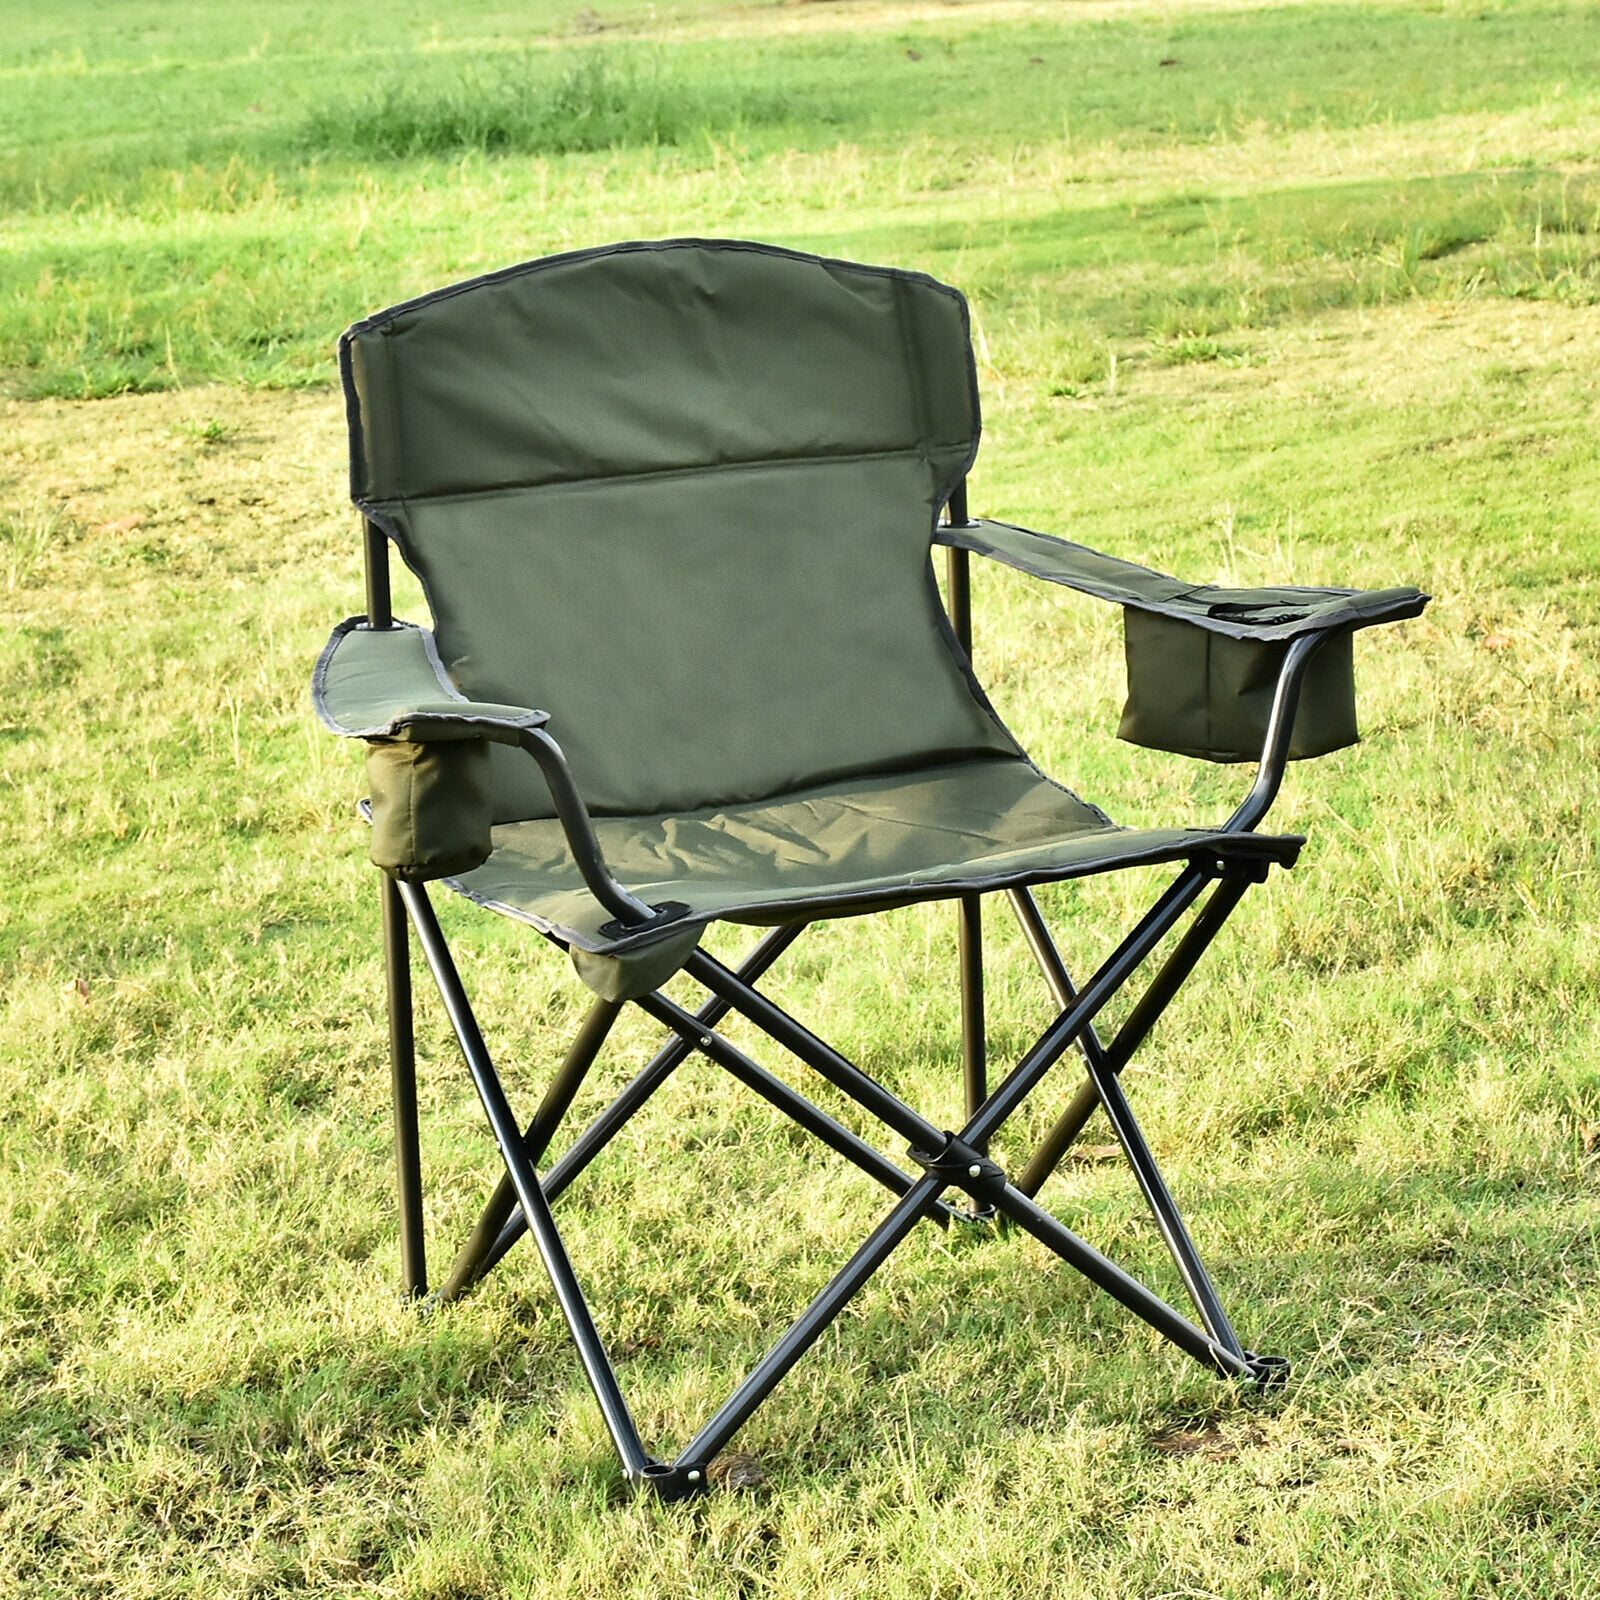 Heavy Duty Folding Lawn Chairs - Core Heavy Duty Portable Outdoor